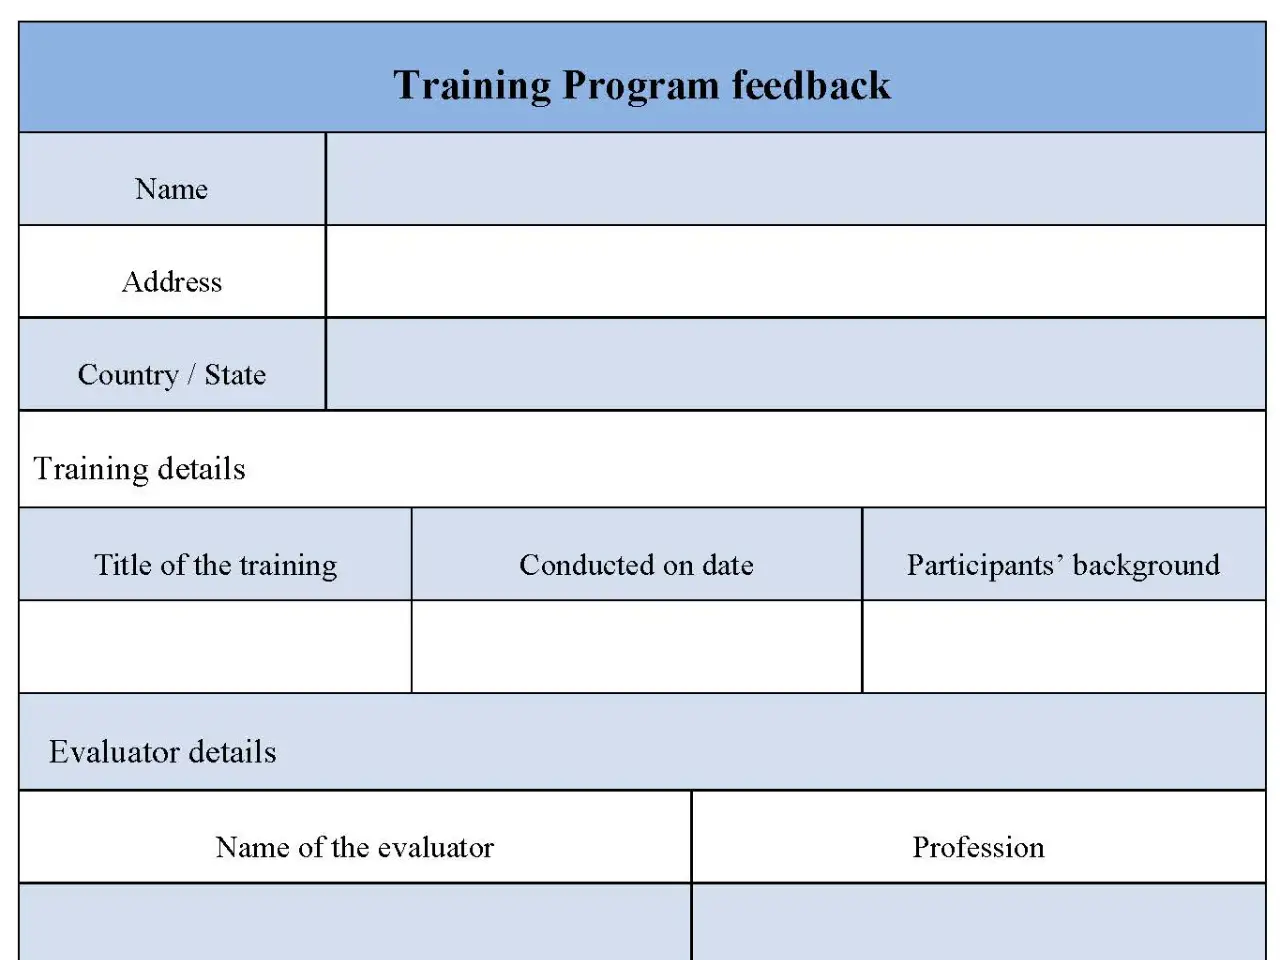 Training Program Feedback Form